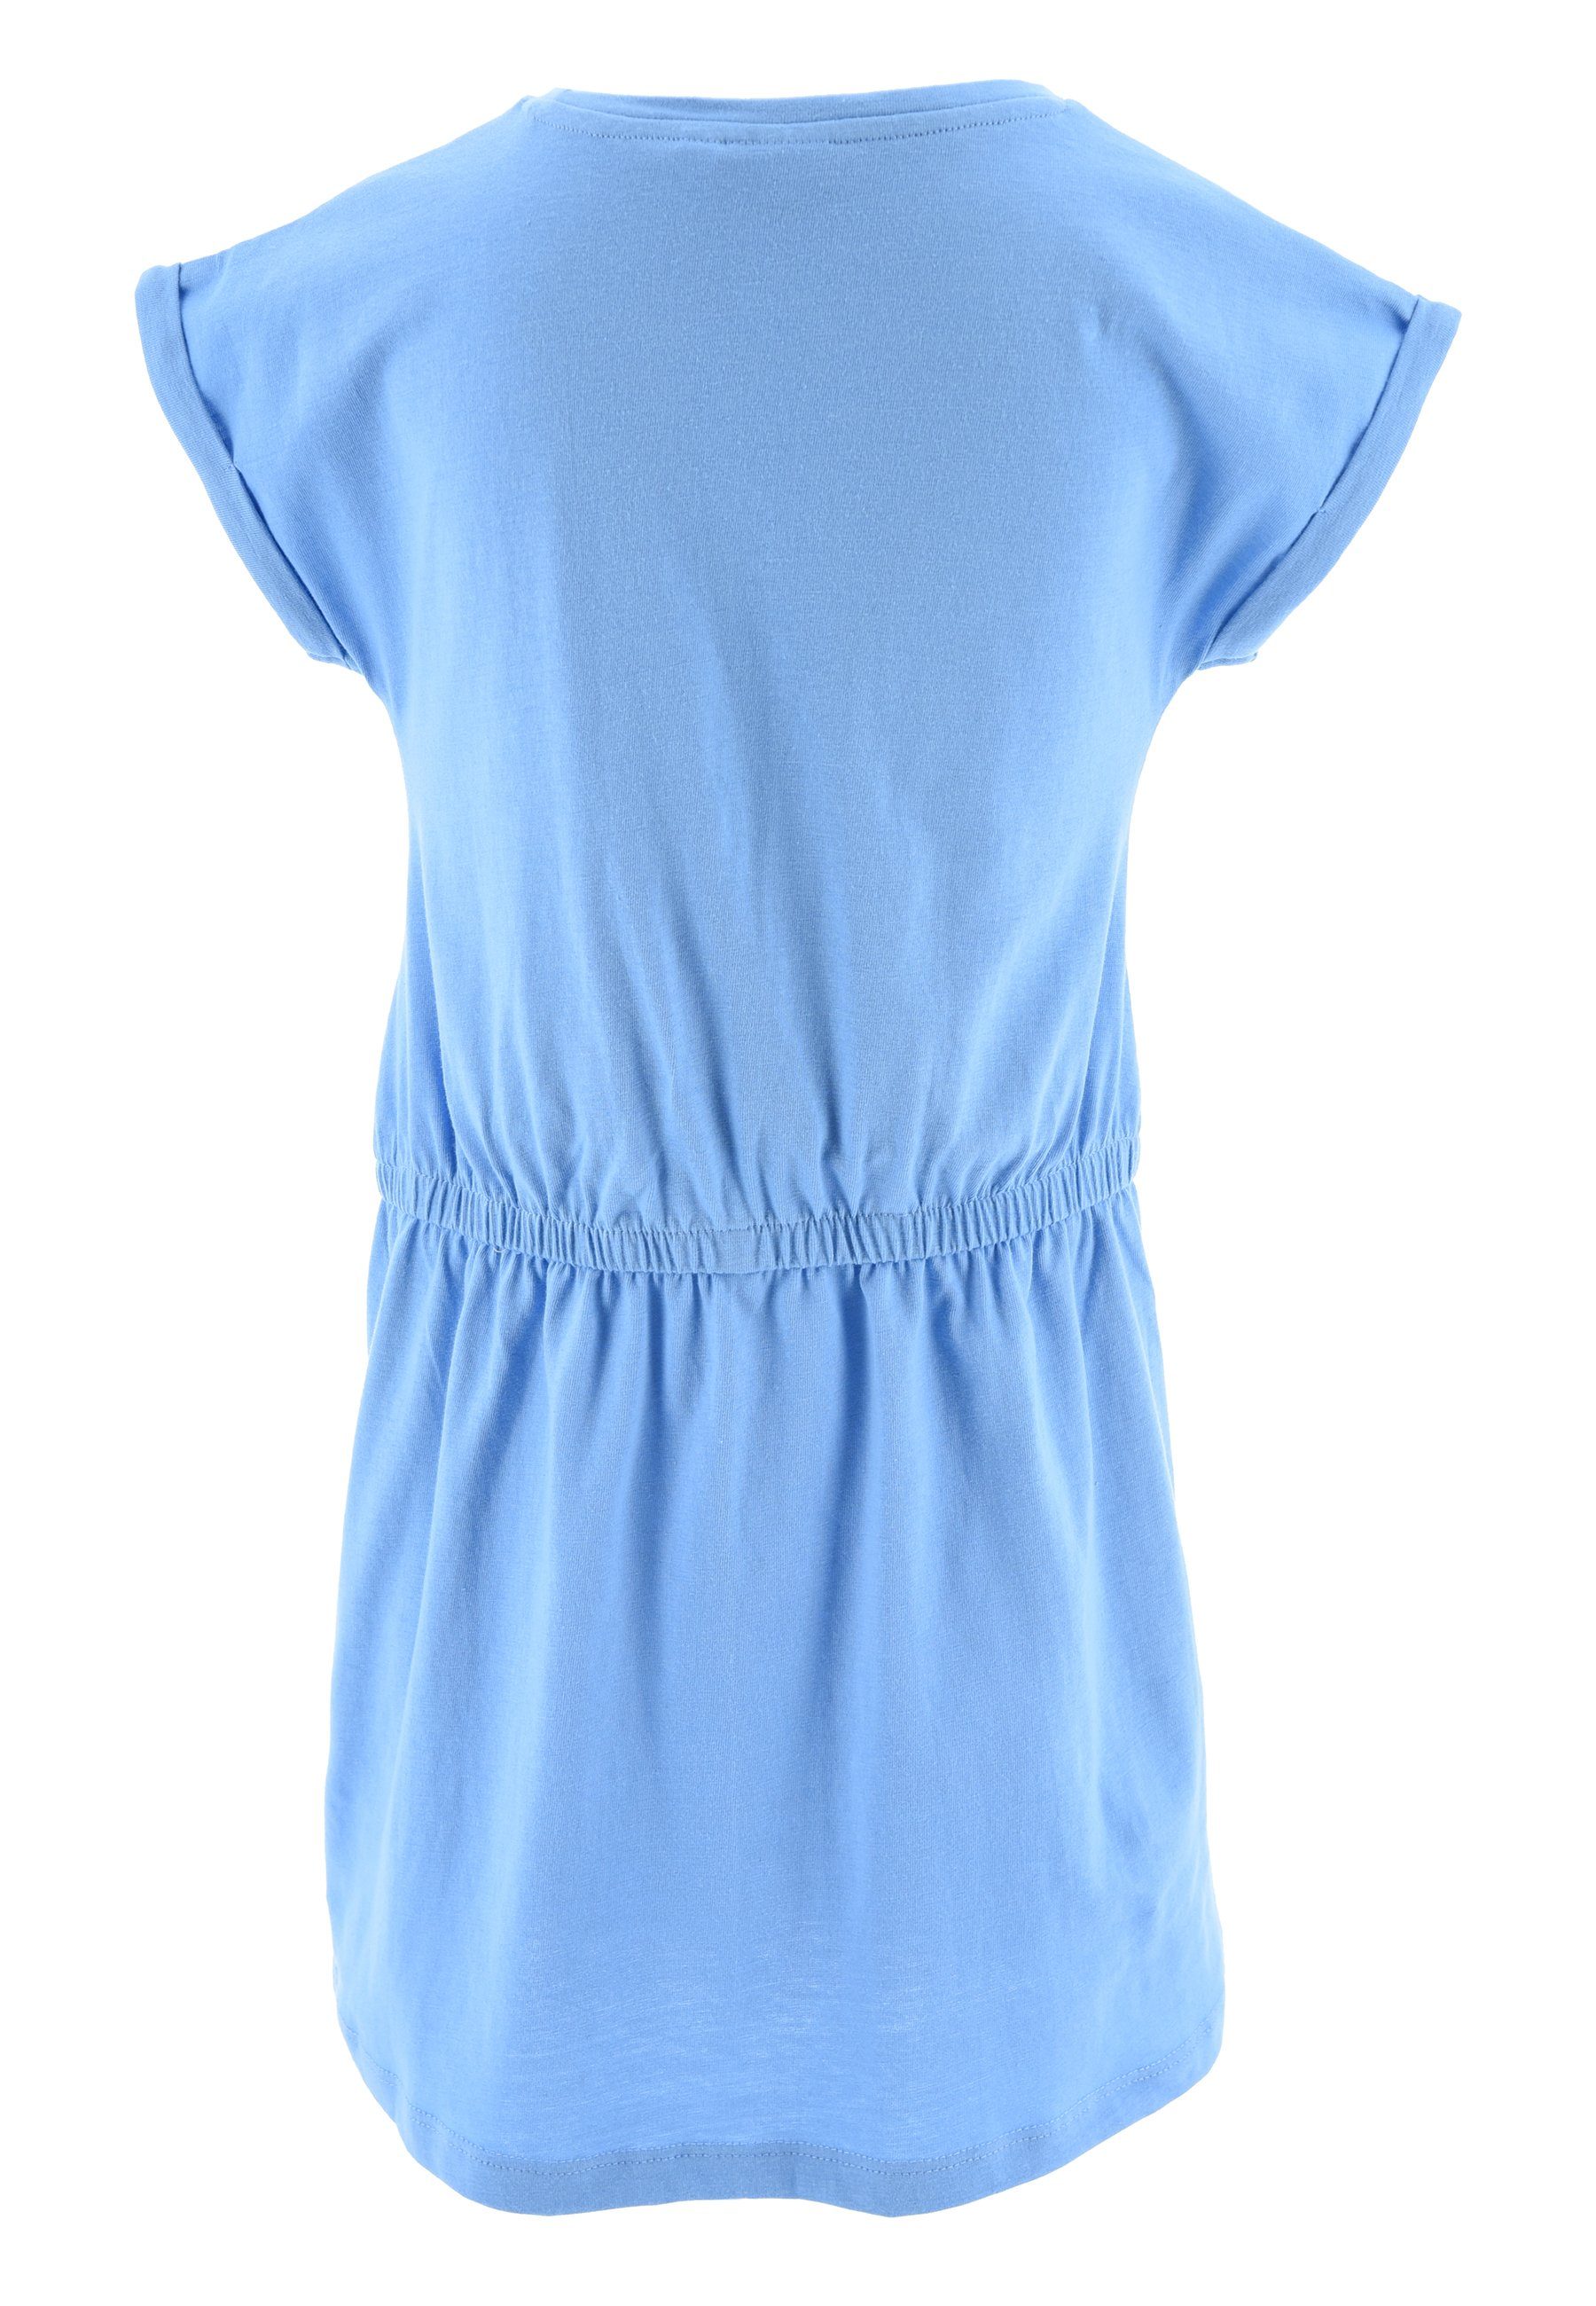 Mädchen Blau Sommer-Kleid Sommerkleid Minnie kurzarm Strand-Kleid Disney Mouse